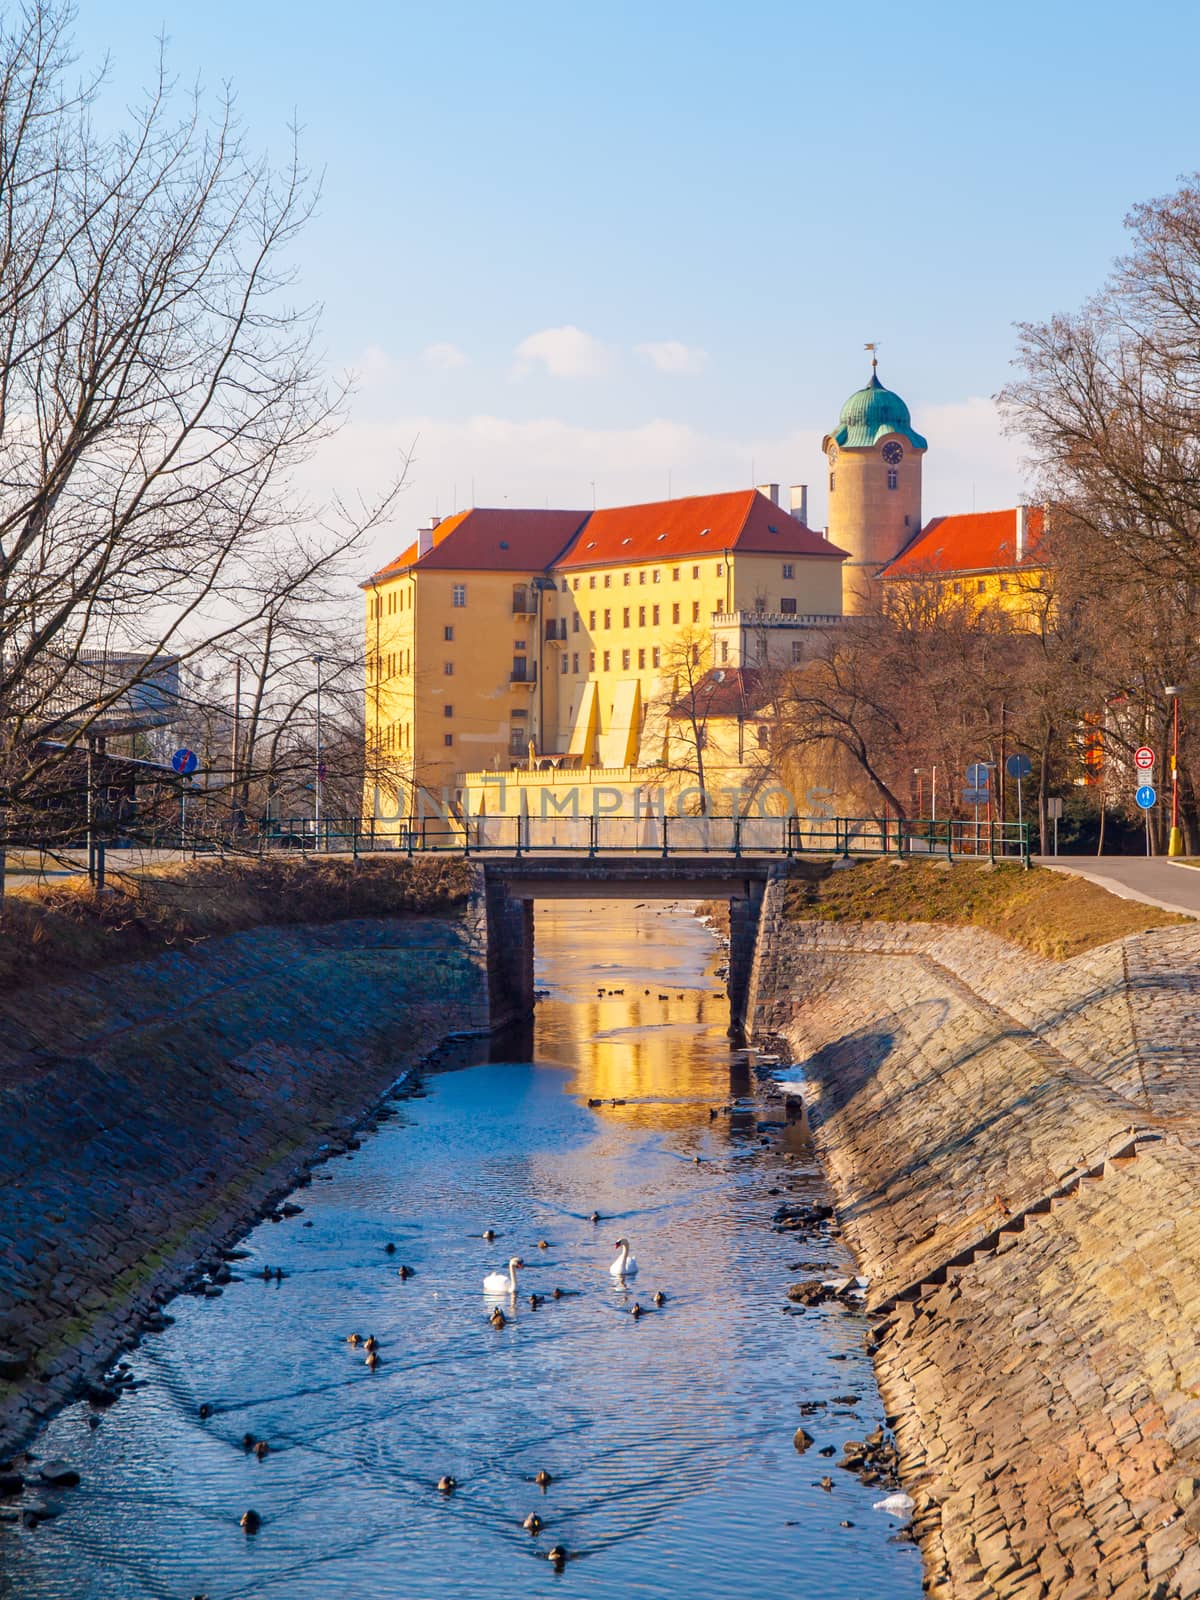 Podebrady Castle at River Labe, Czech Republic by pyty